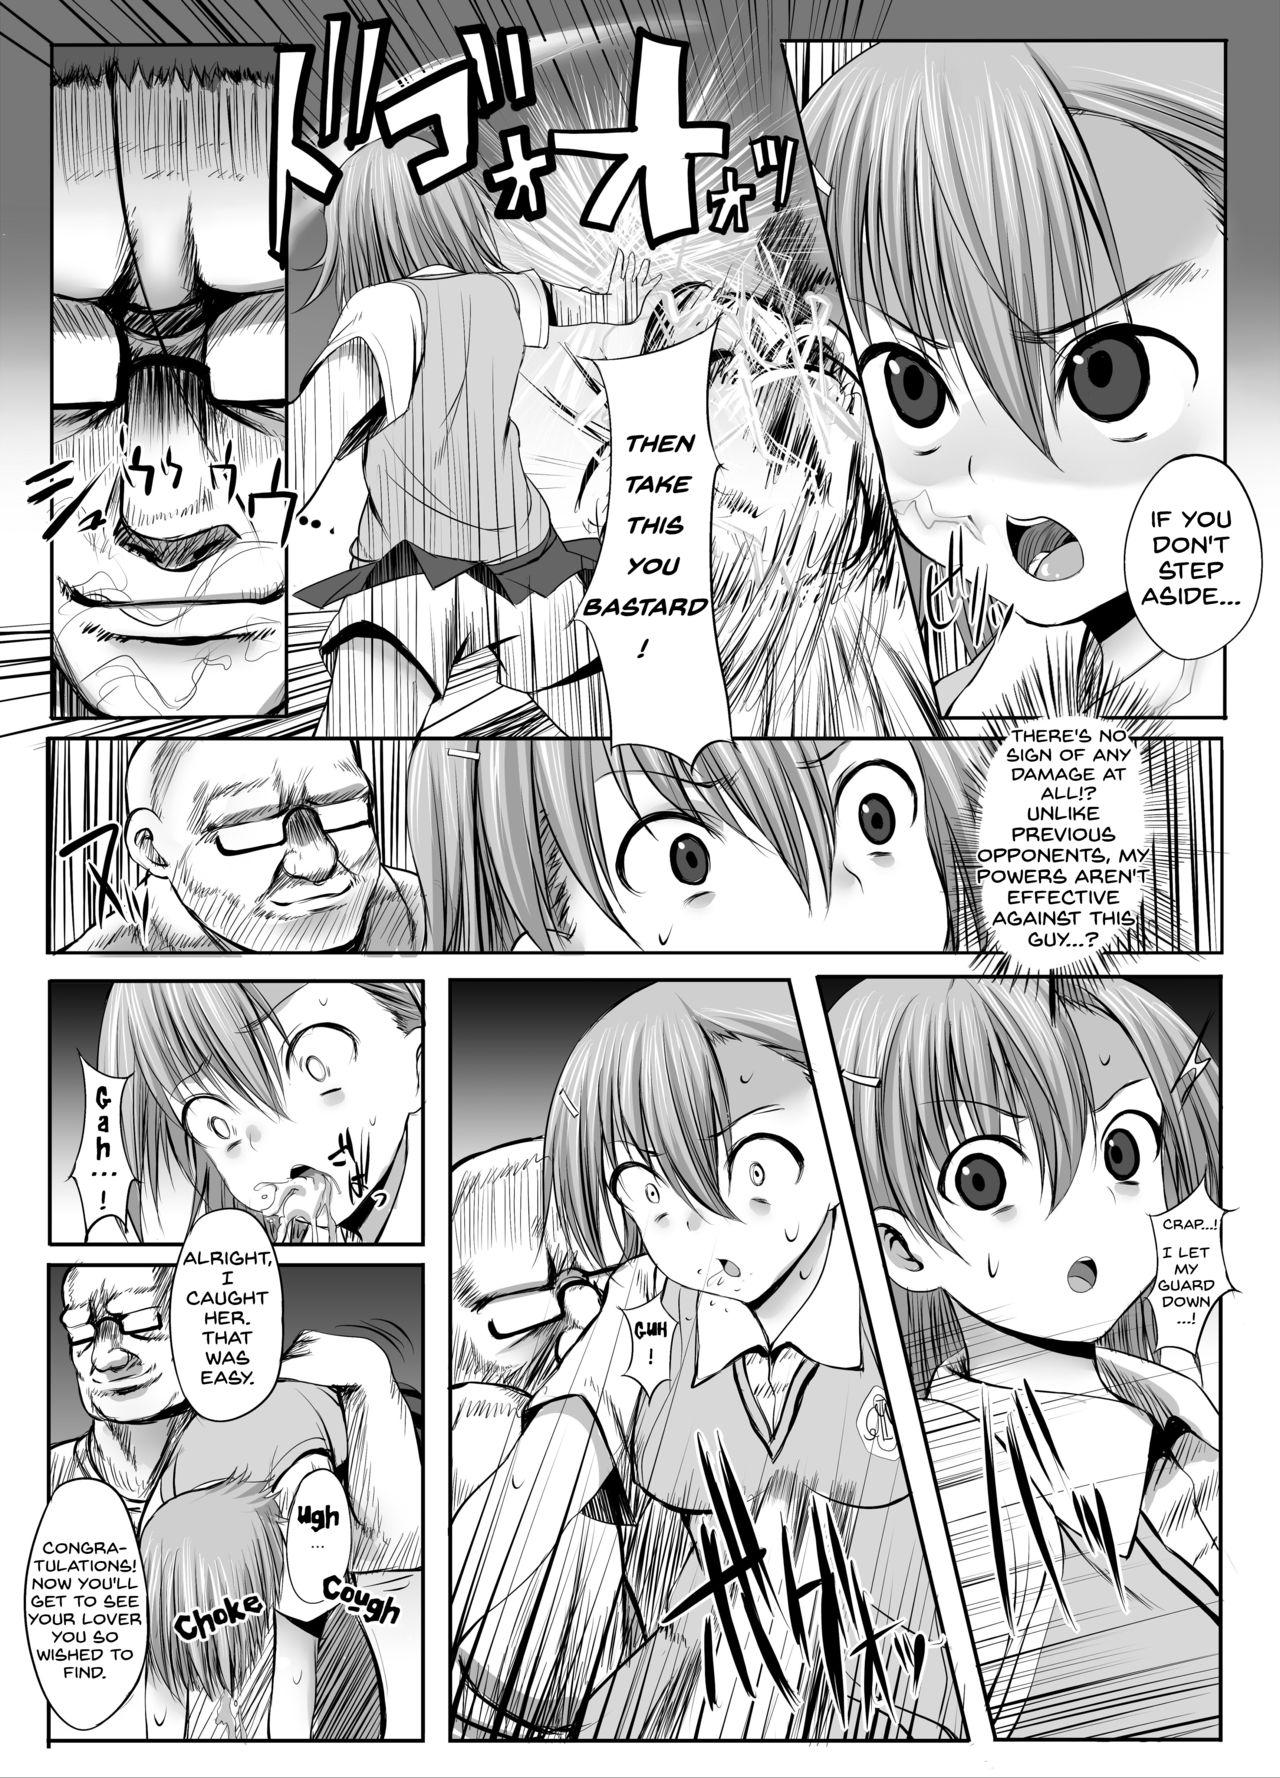 Verga ESP・BREAKER - Toaru kagaku no railgun Group - Page 3